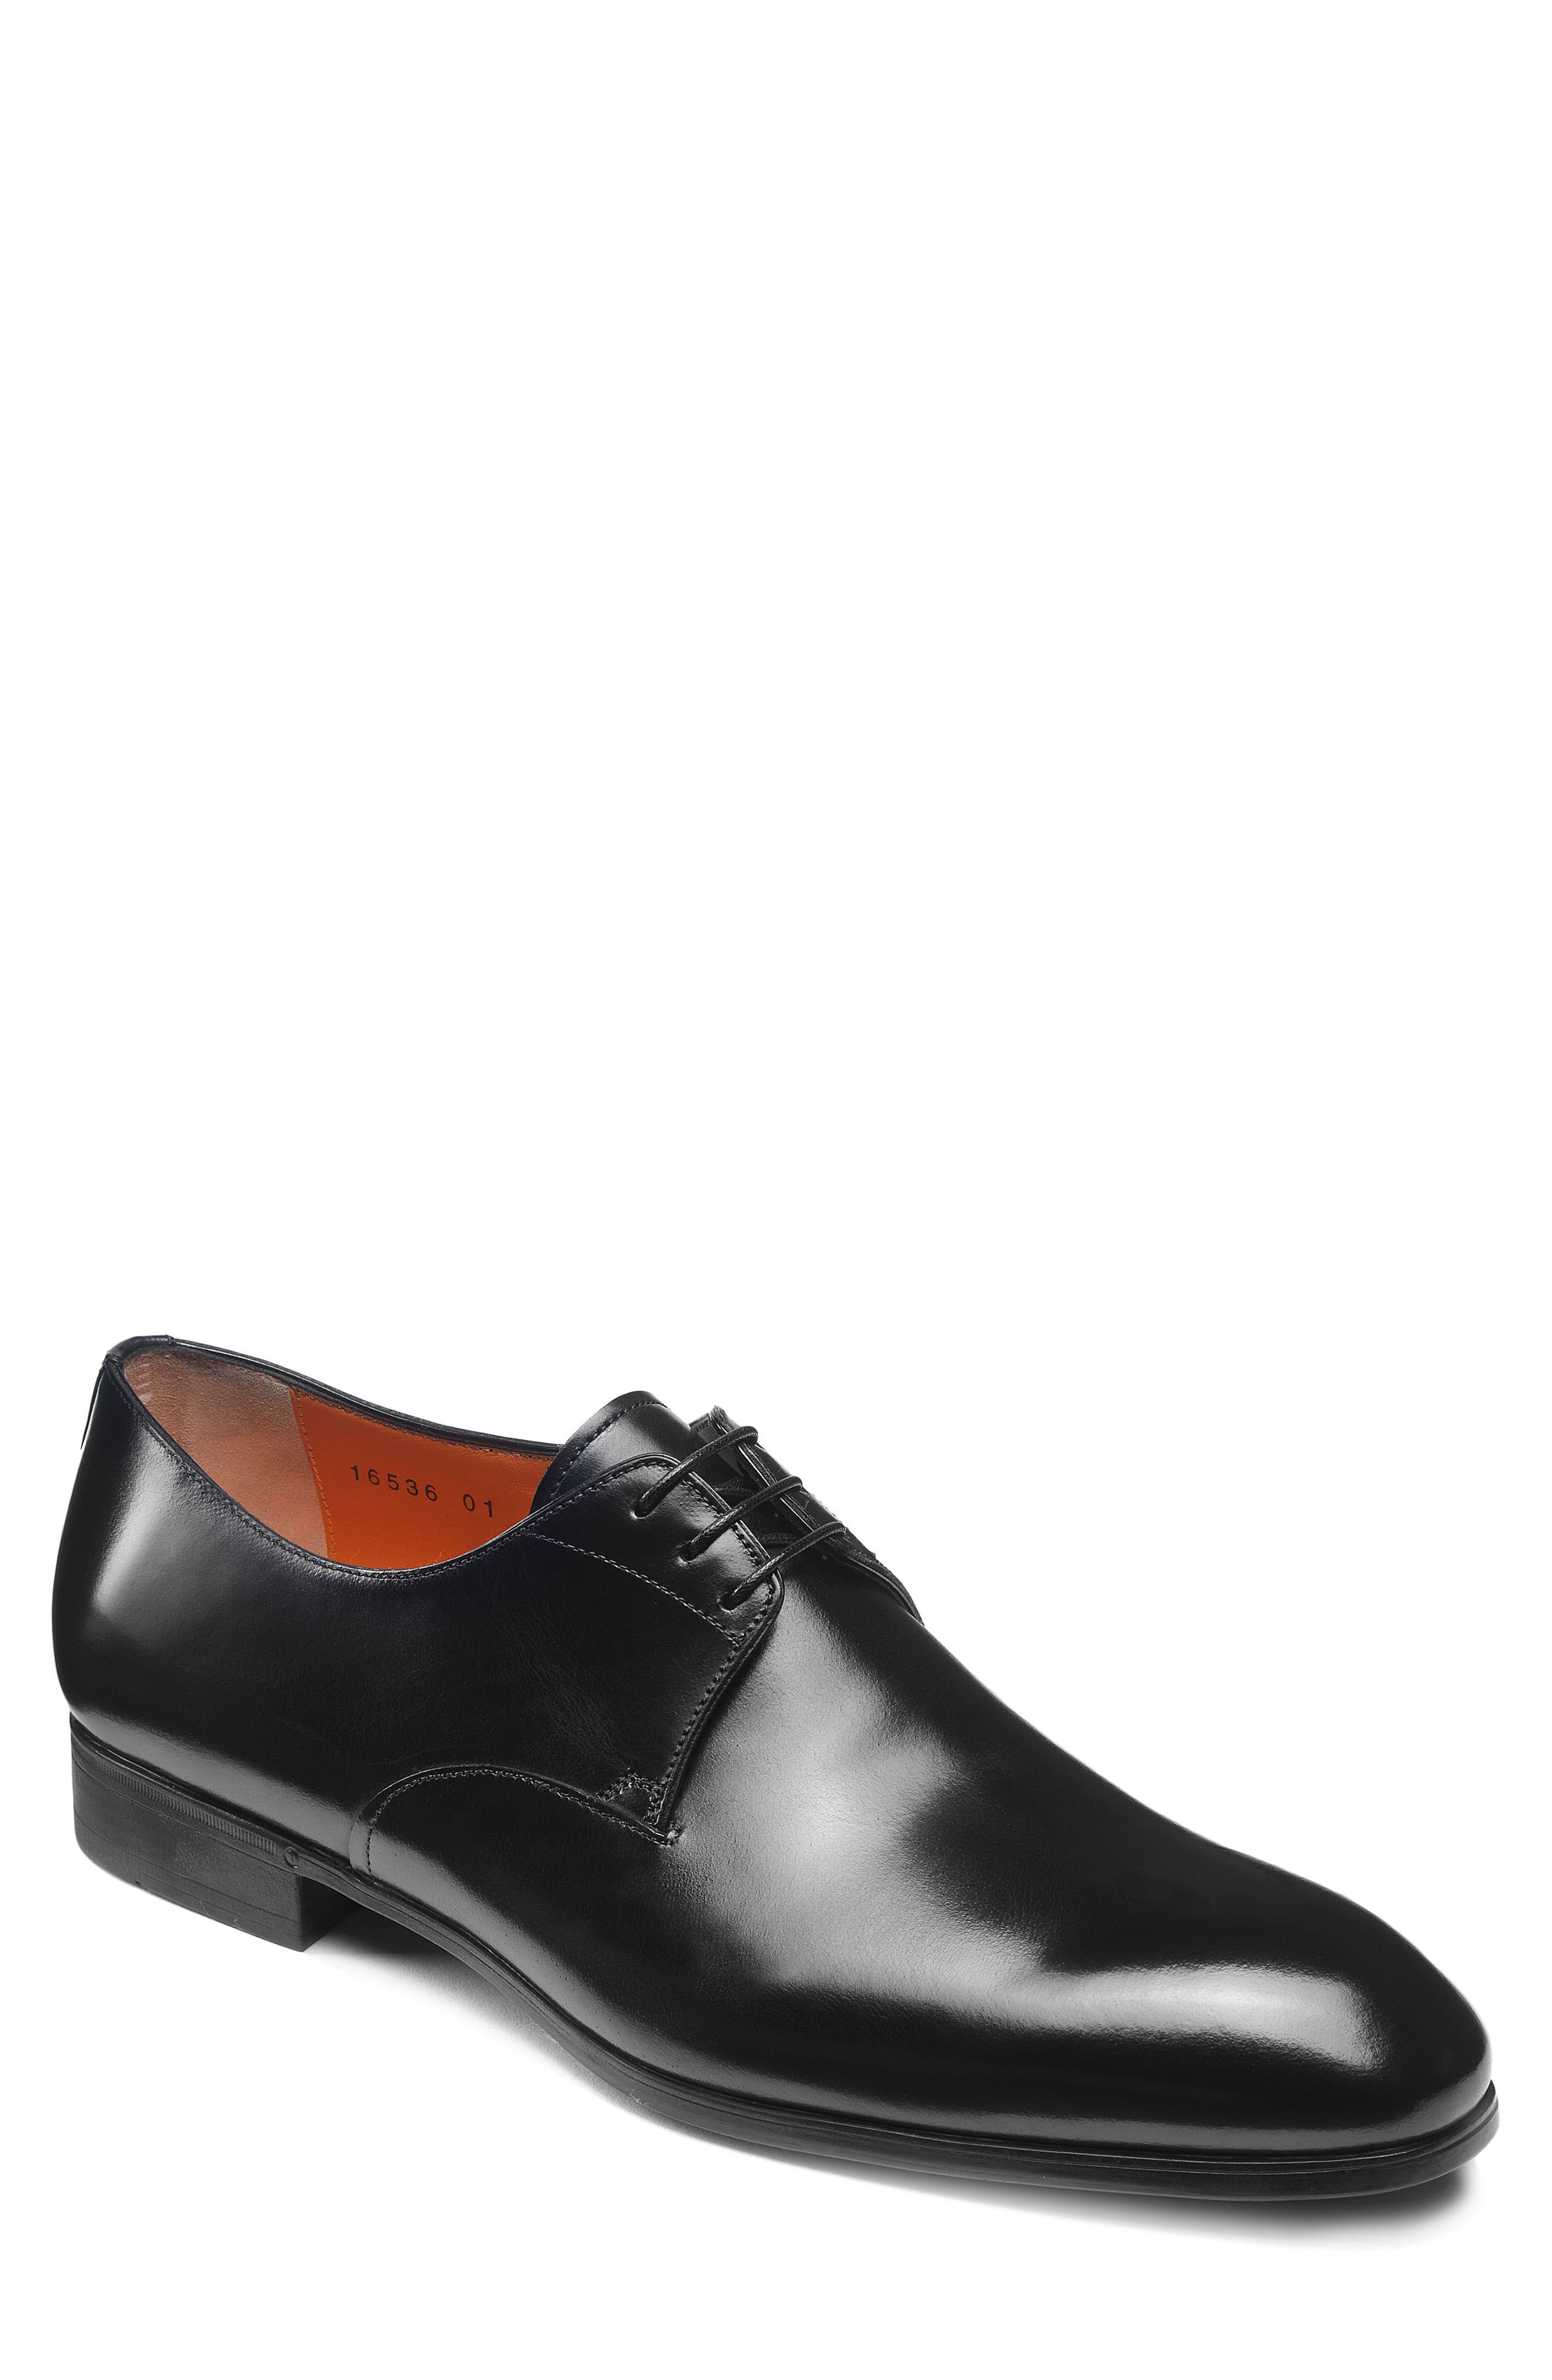 New Men Two Tone Dress Shoes Tuxedo Fashion Lace Up Oxfords Patent Shoe PL07 